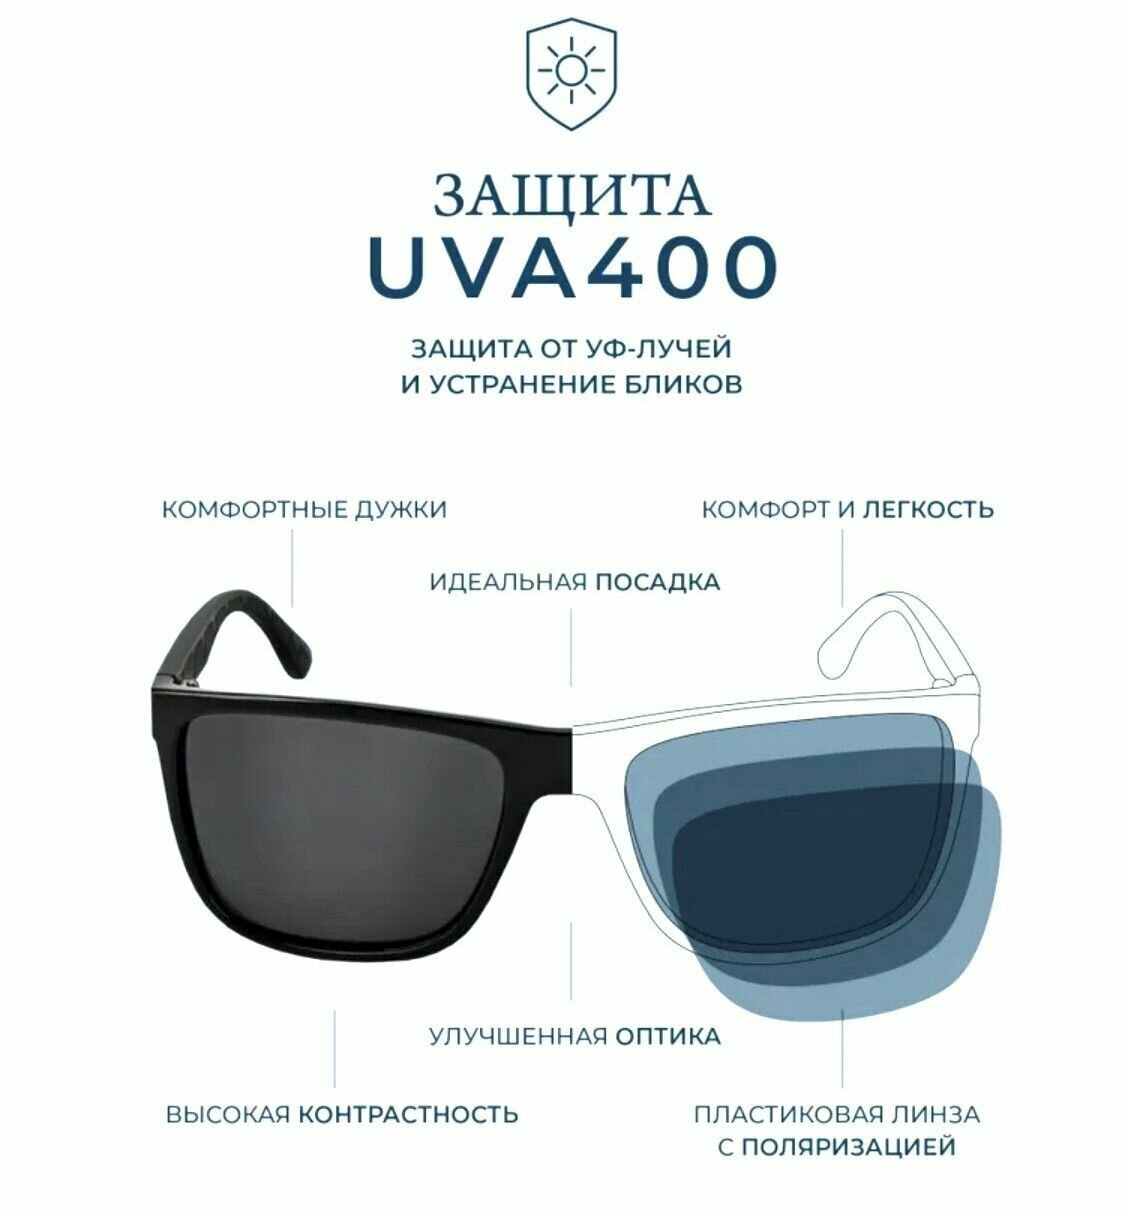 Солнцезащитные очки Matrix  Очки солнцезащитные Matrix,футляр